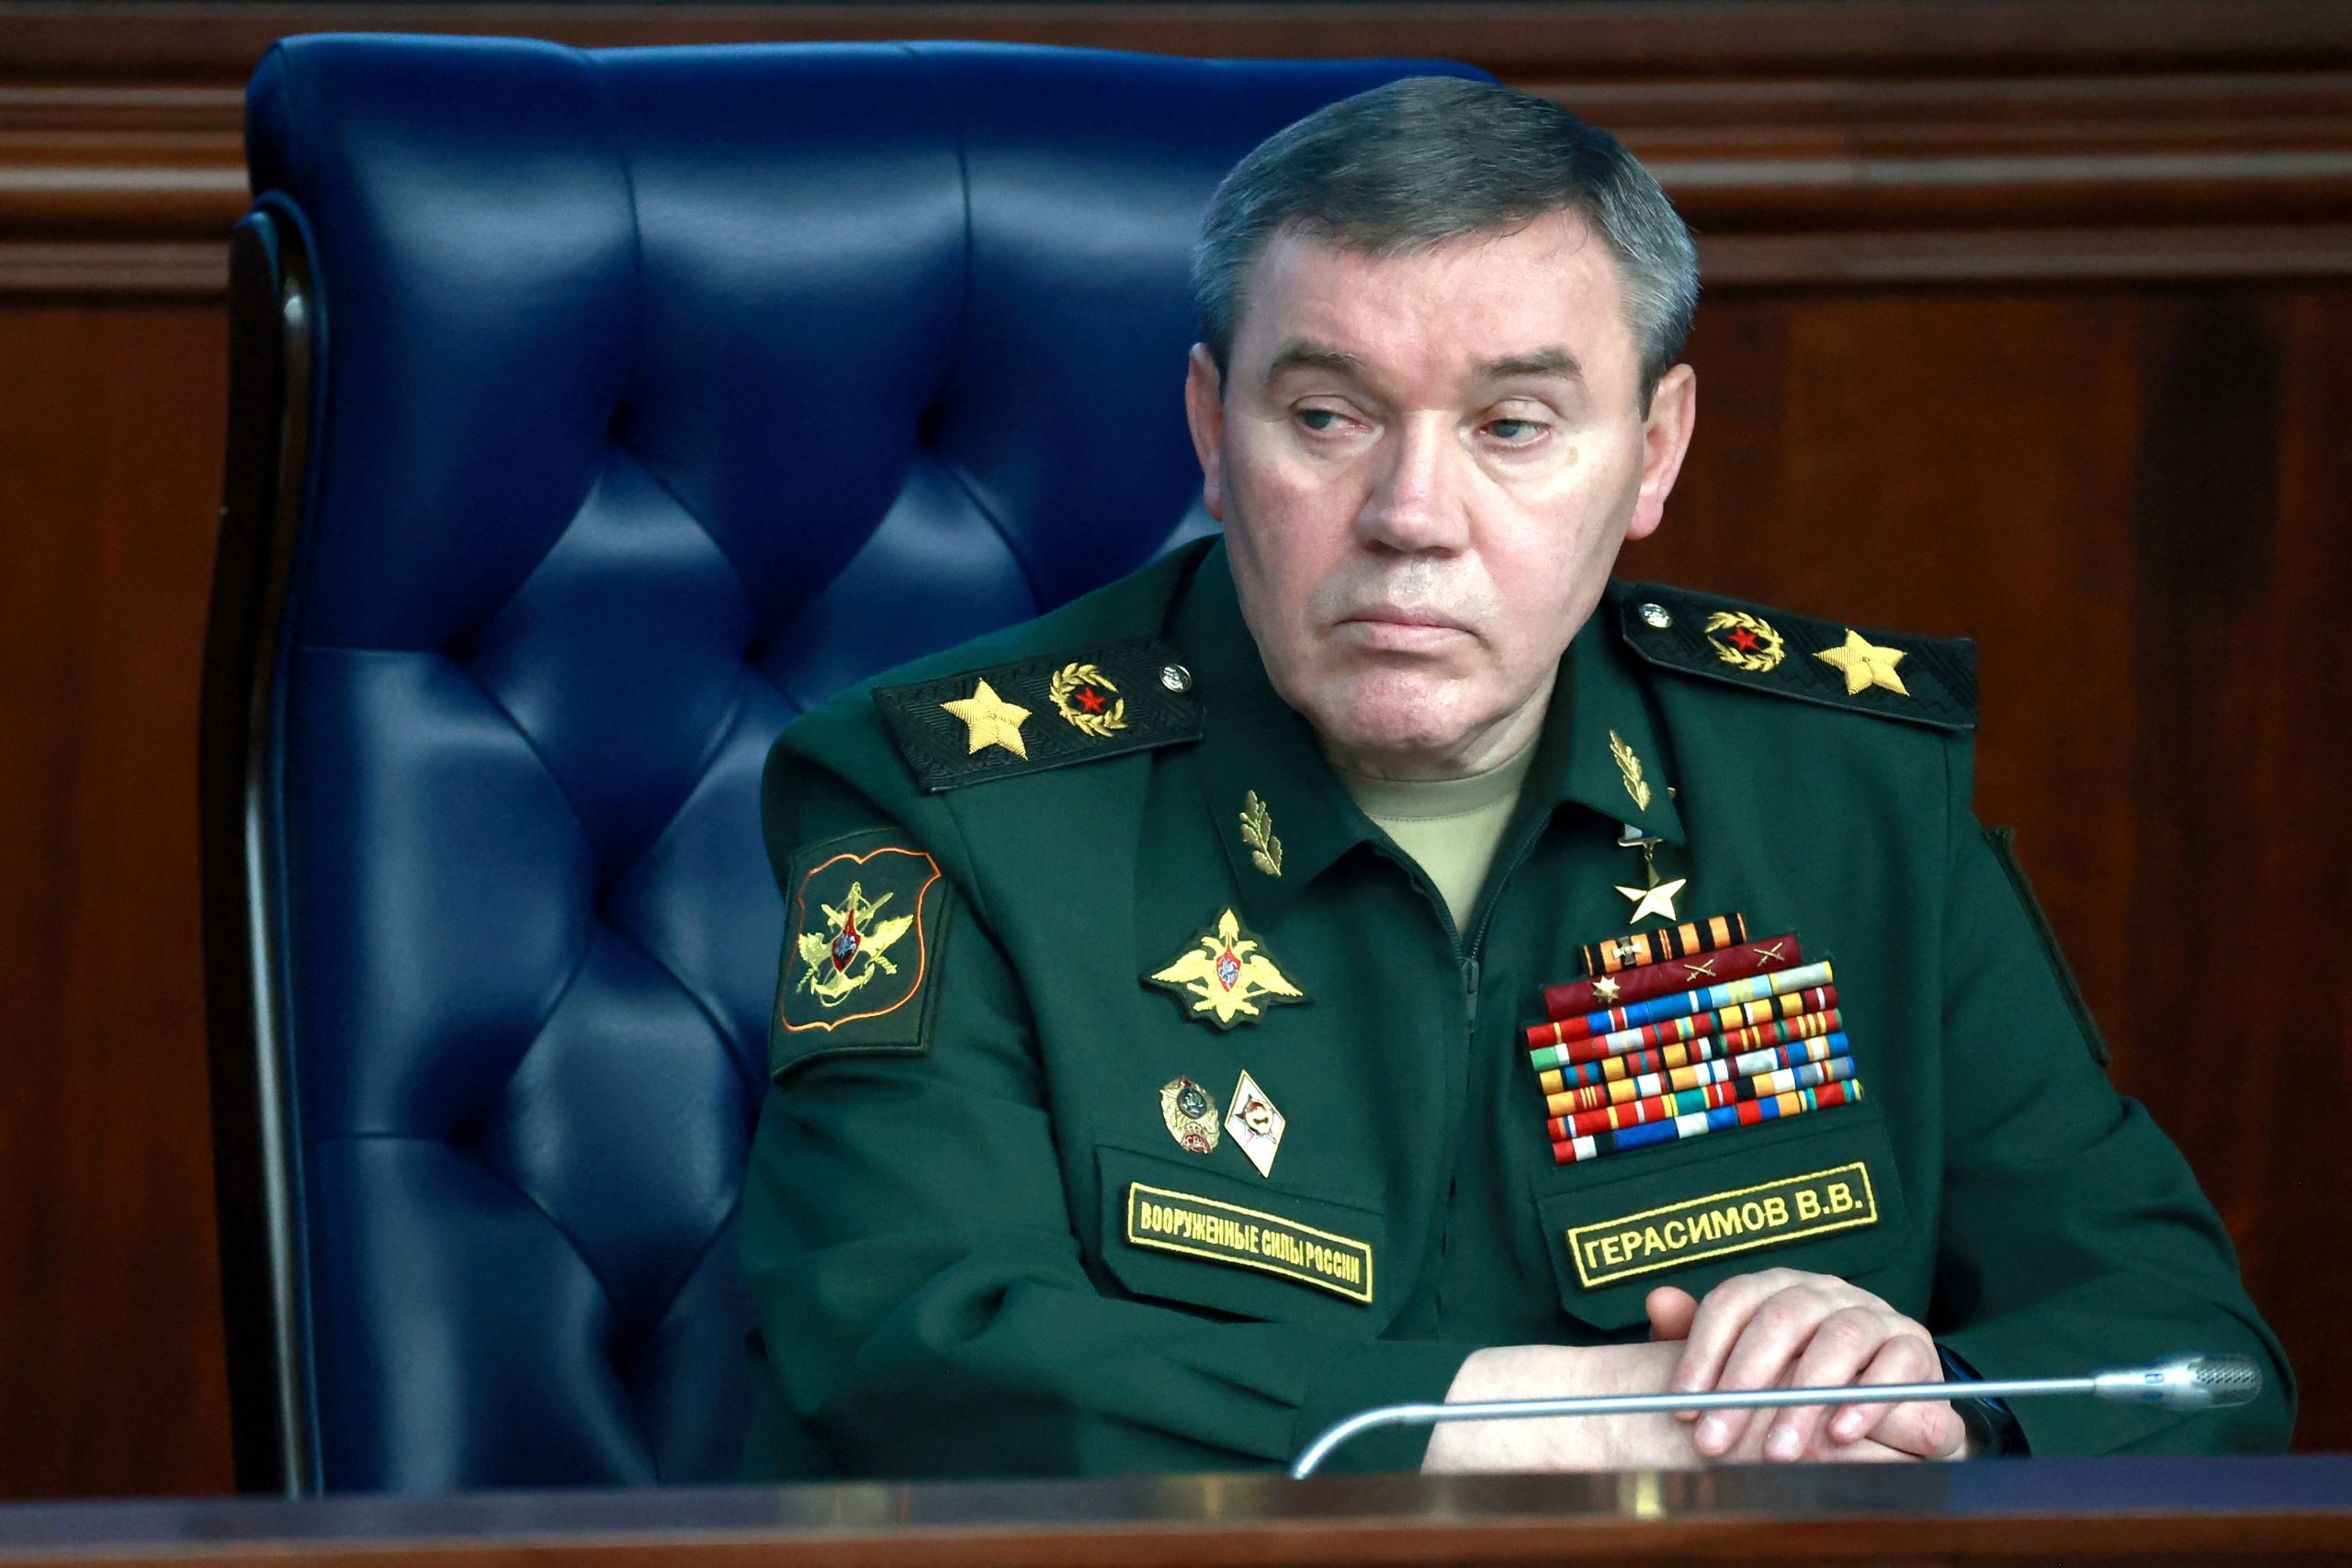 Ξαφνική κλιμάκωση από την Μόσχα της σύρραξης στην Ουκρανία: Μετά τον θρίαμβο στο Σολεντάρ ανέλαβε διοικητής όλων των ρωσικών δυνάμεων ο Β.Γερασίμοβ